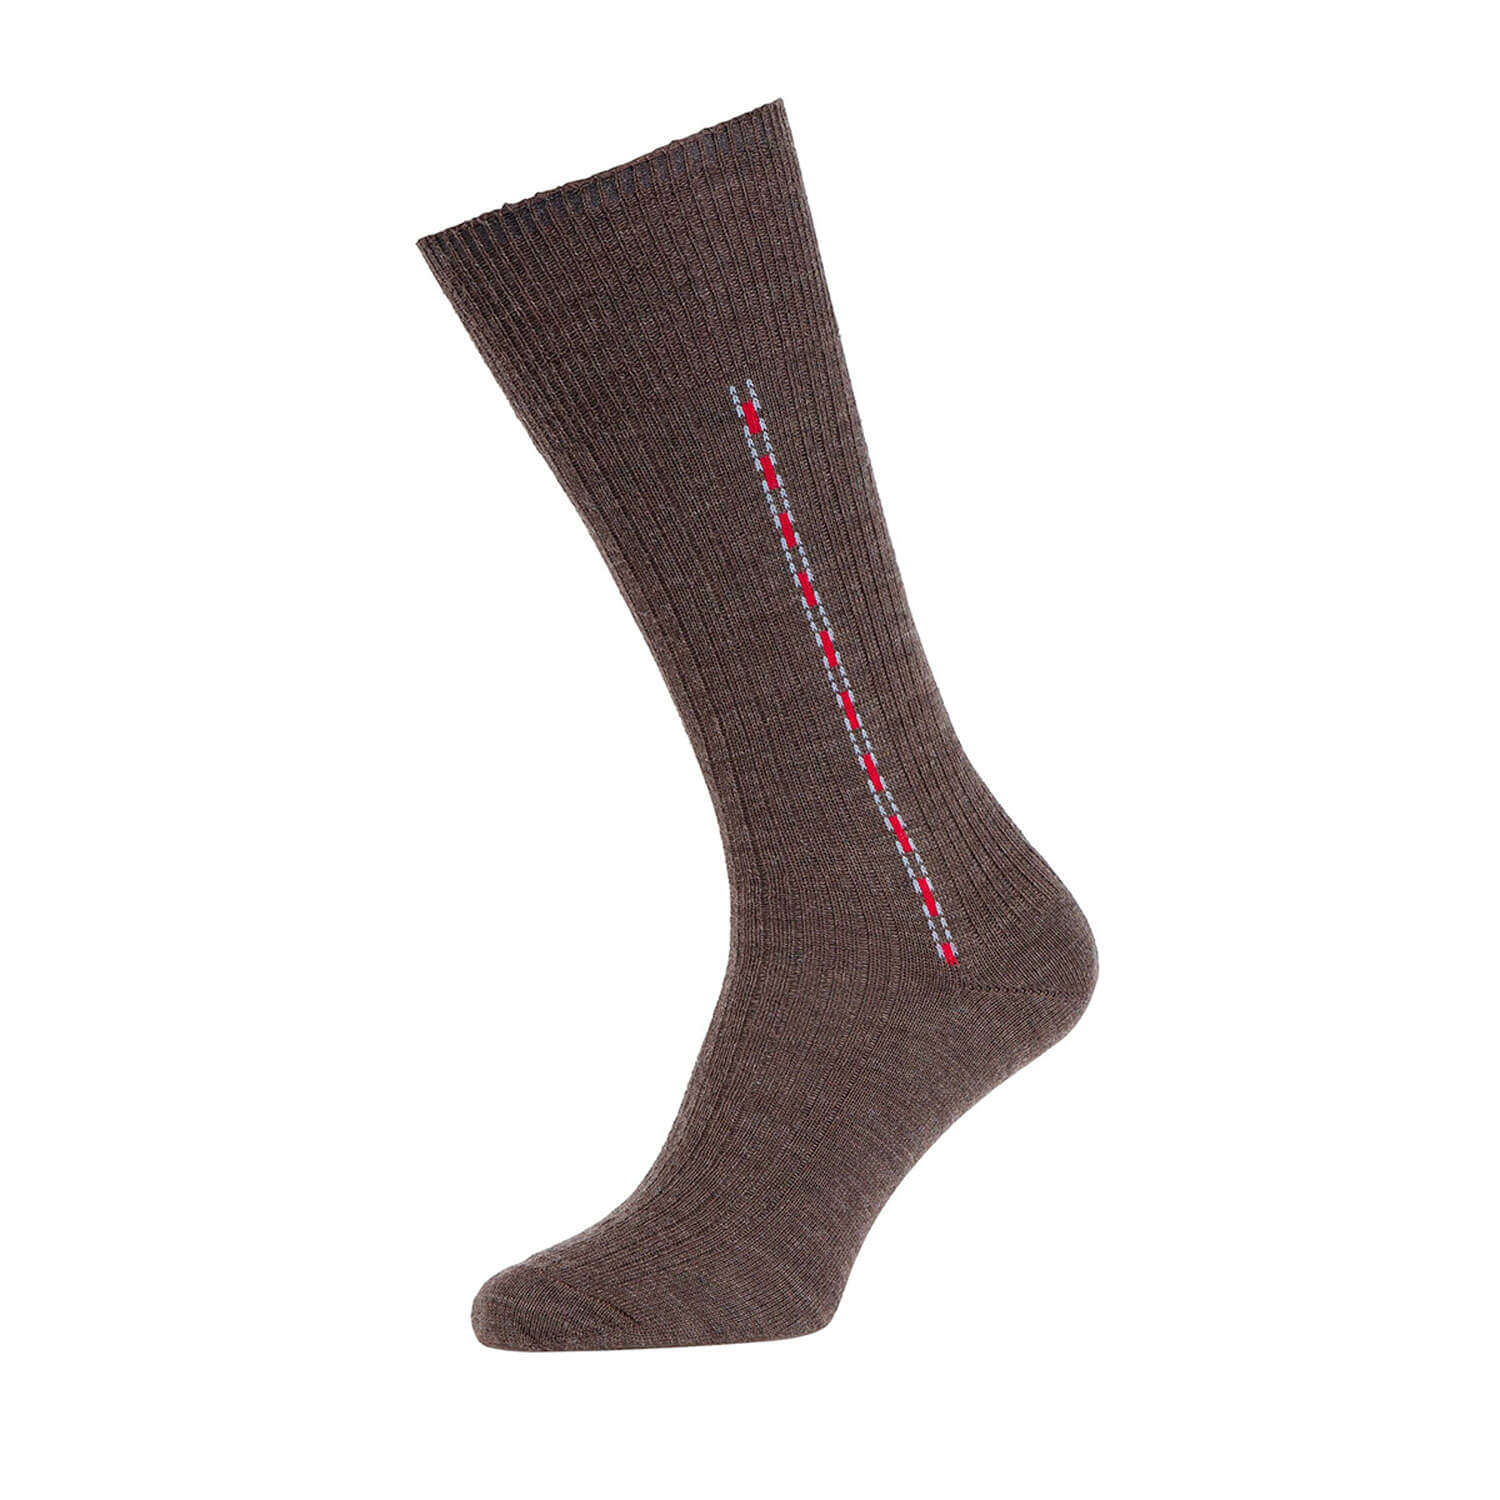 Fancy Half Hose Socks - Brown